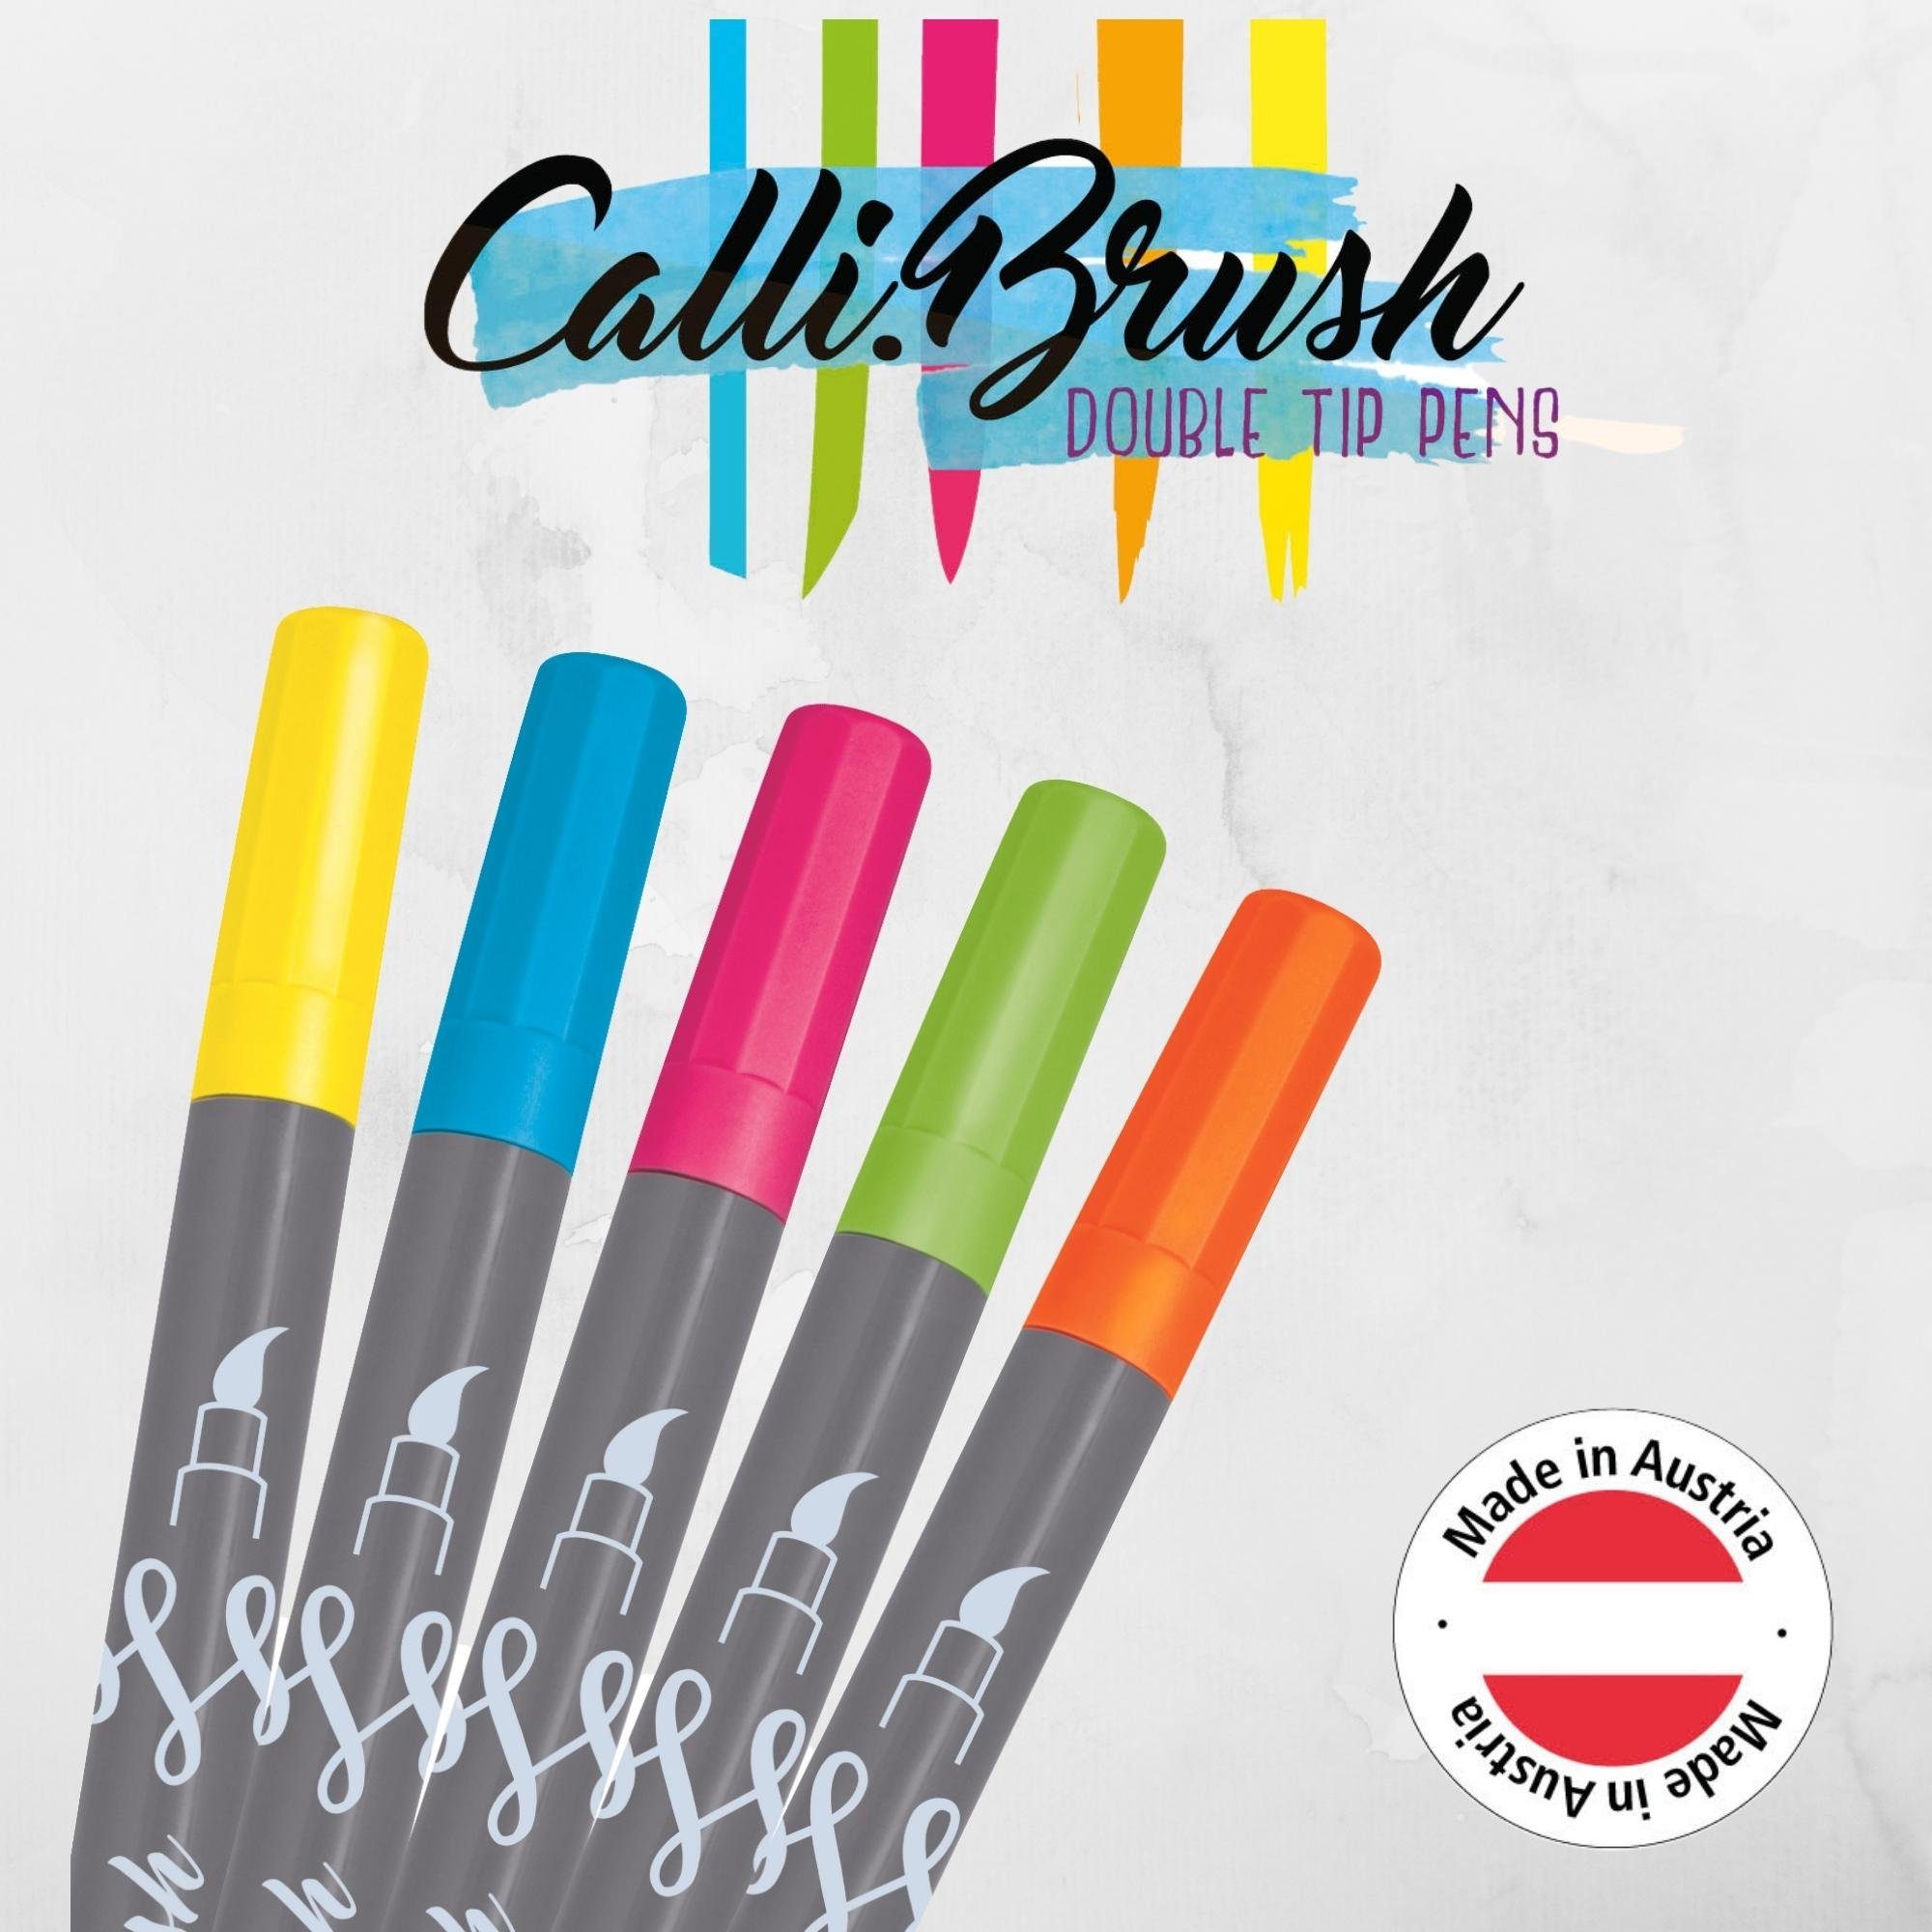 Online Pen Fineliner Calli.Brush, Brush Neon 5x Pens, Spitzen Set, Handlettering verschiedene bunte Stifte